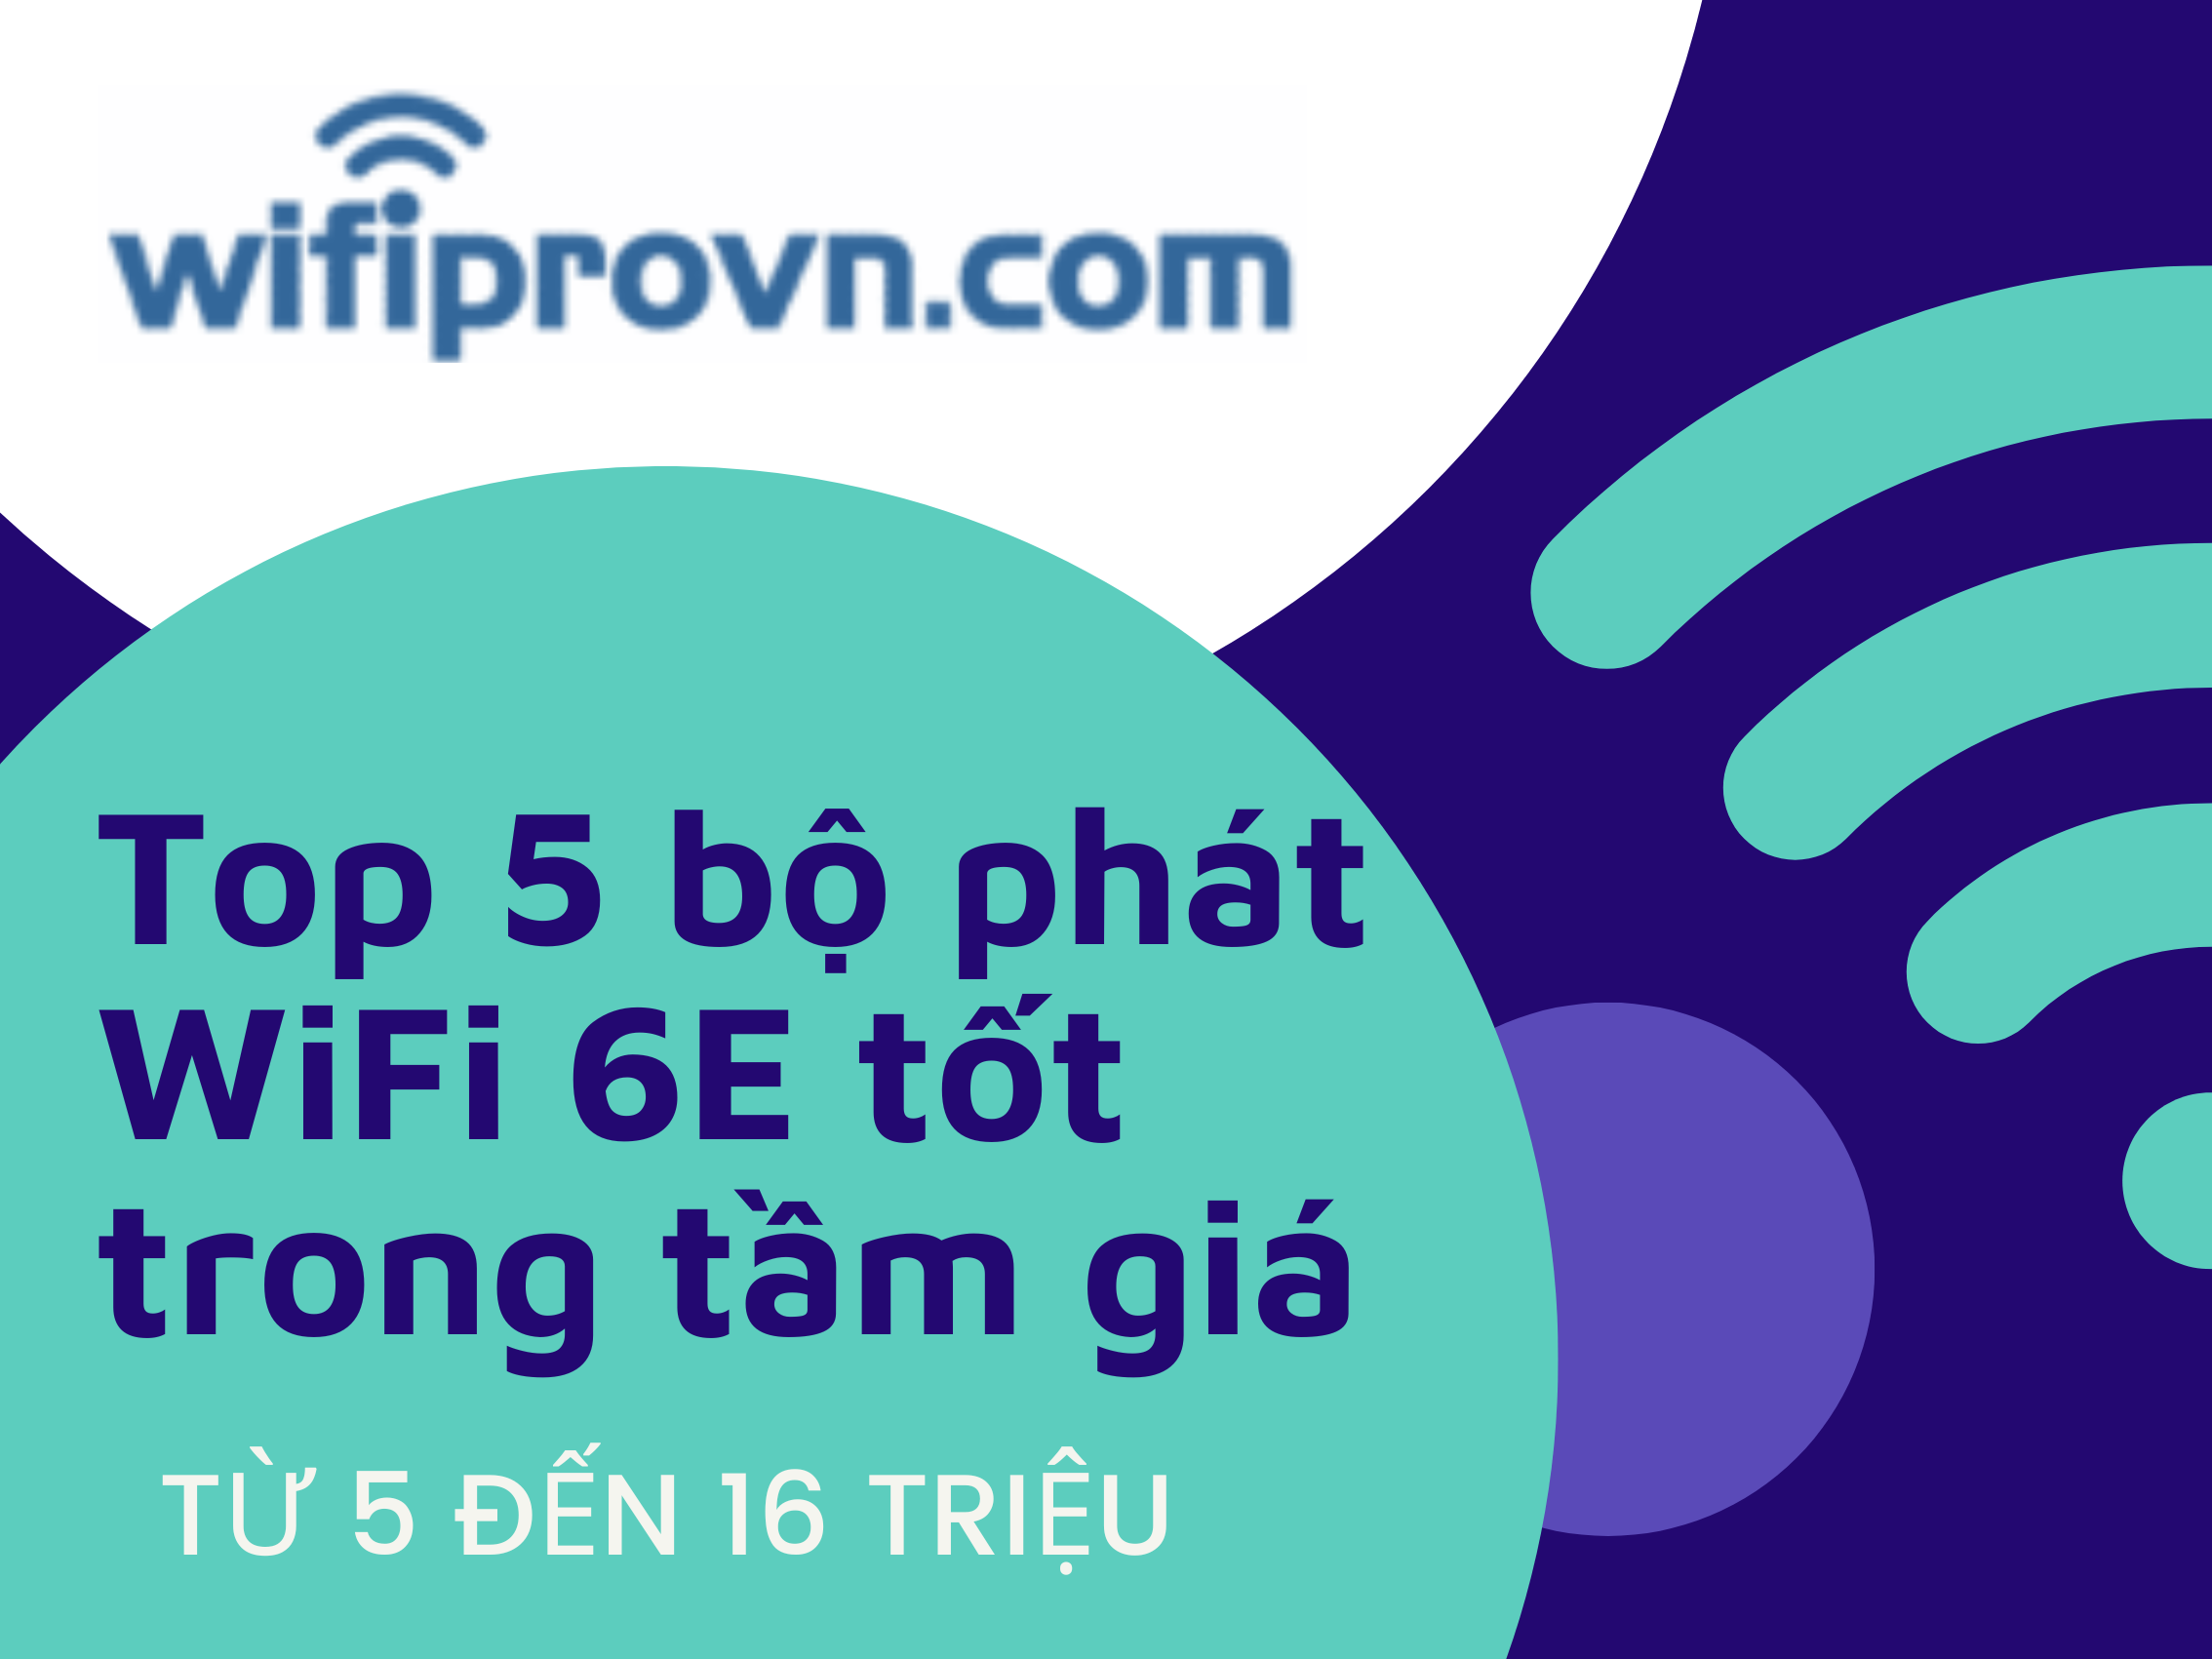 https://www.wifiprovn.com/wifi6-802-11ax-the-he-wi-fi-cong-nghe-thu-sau/